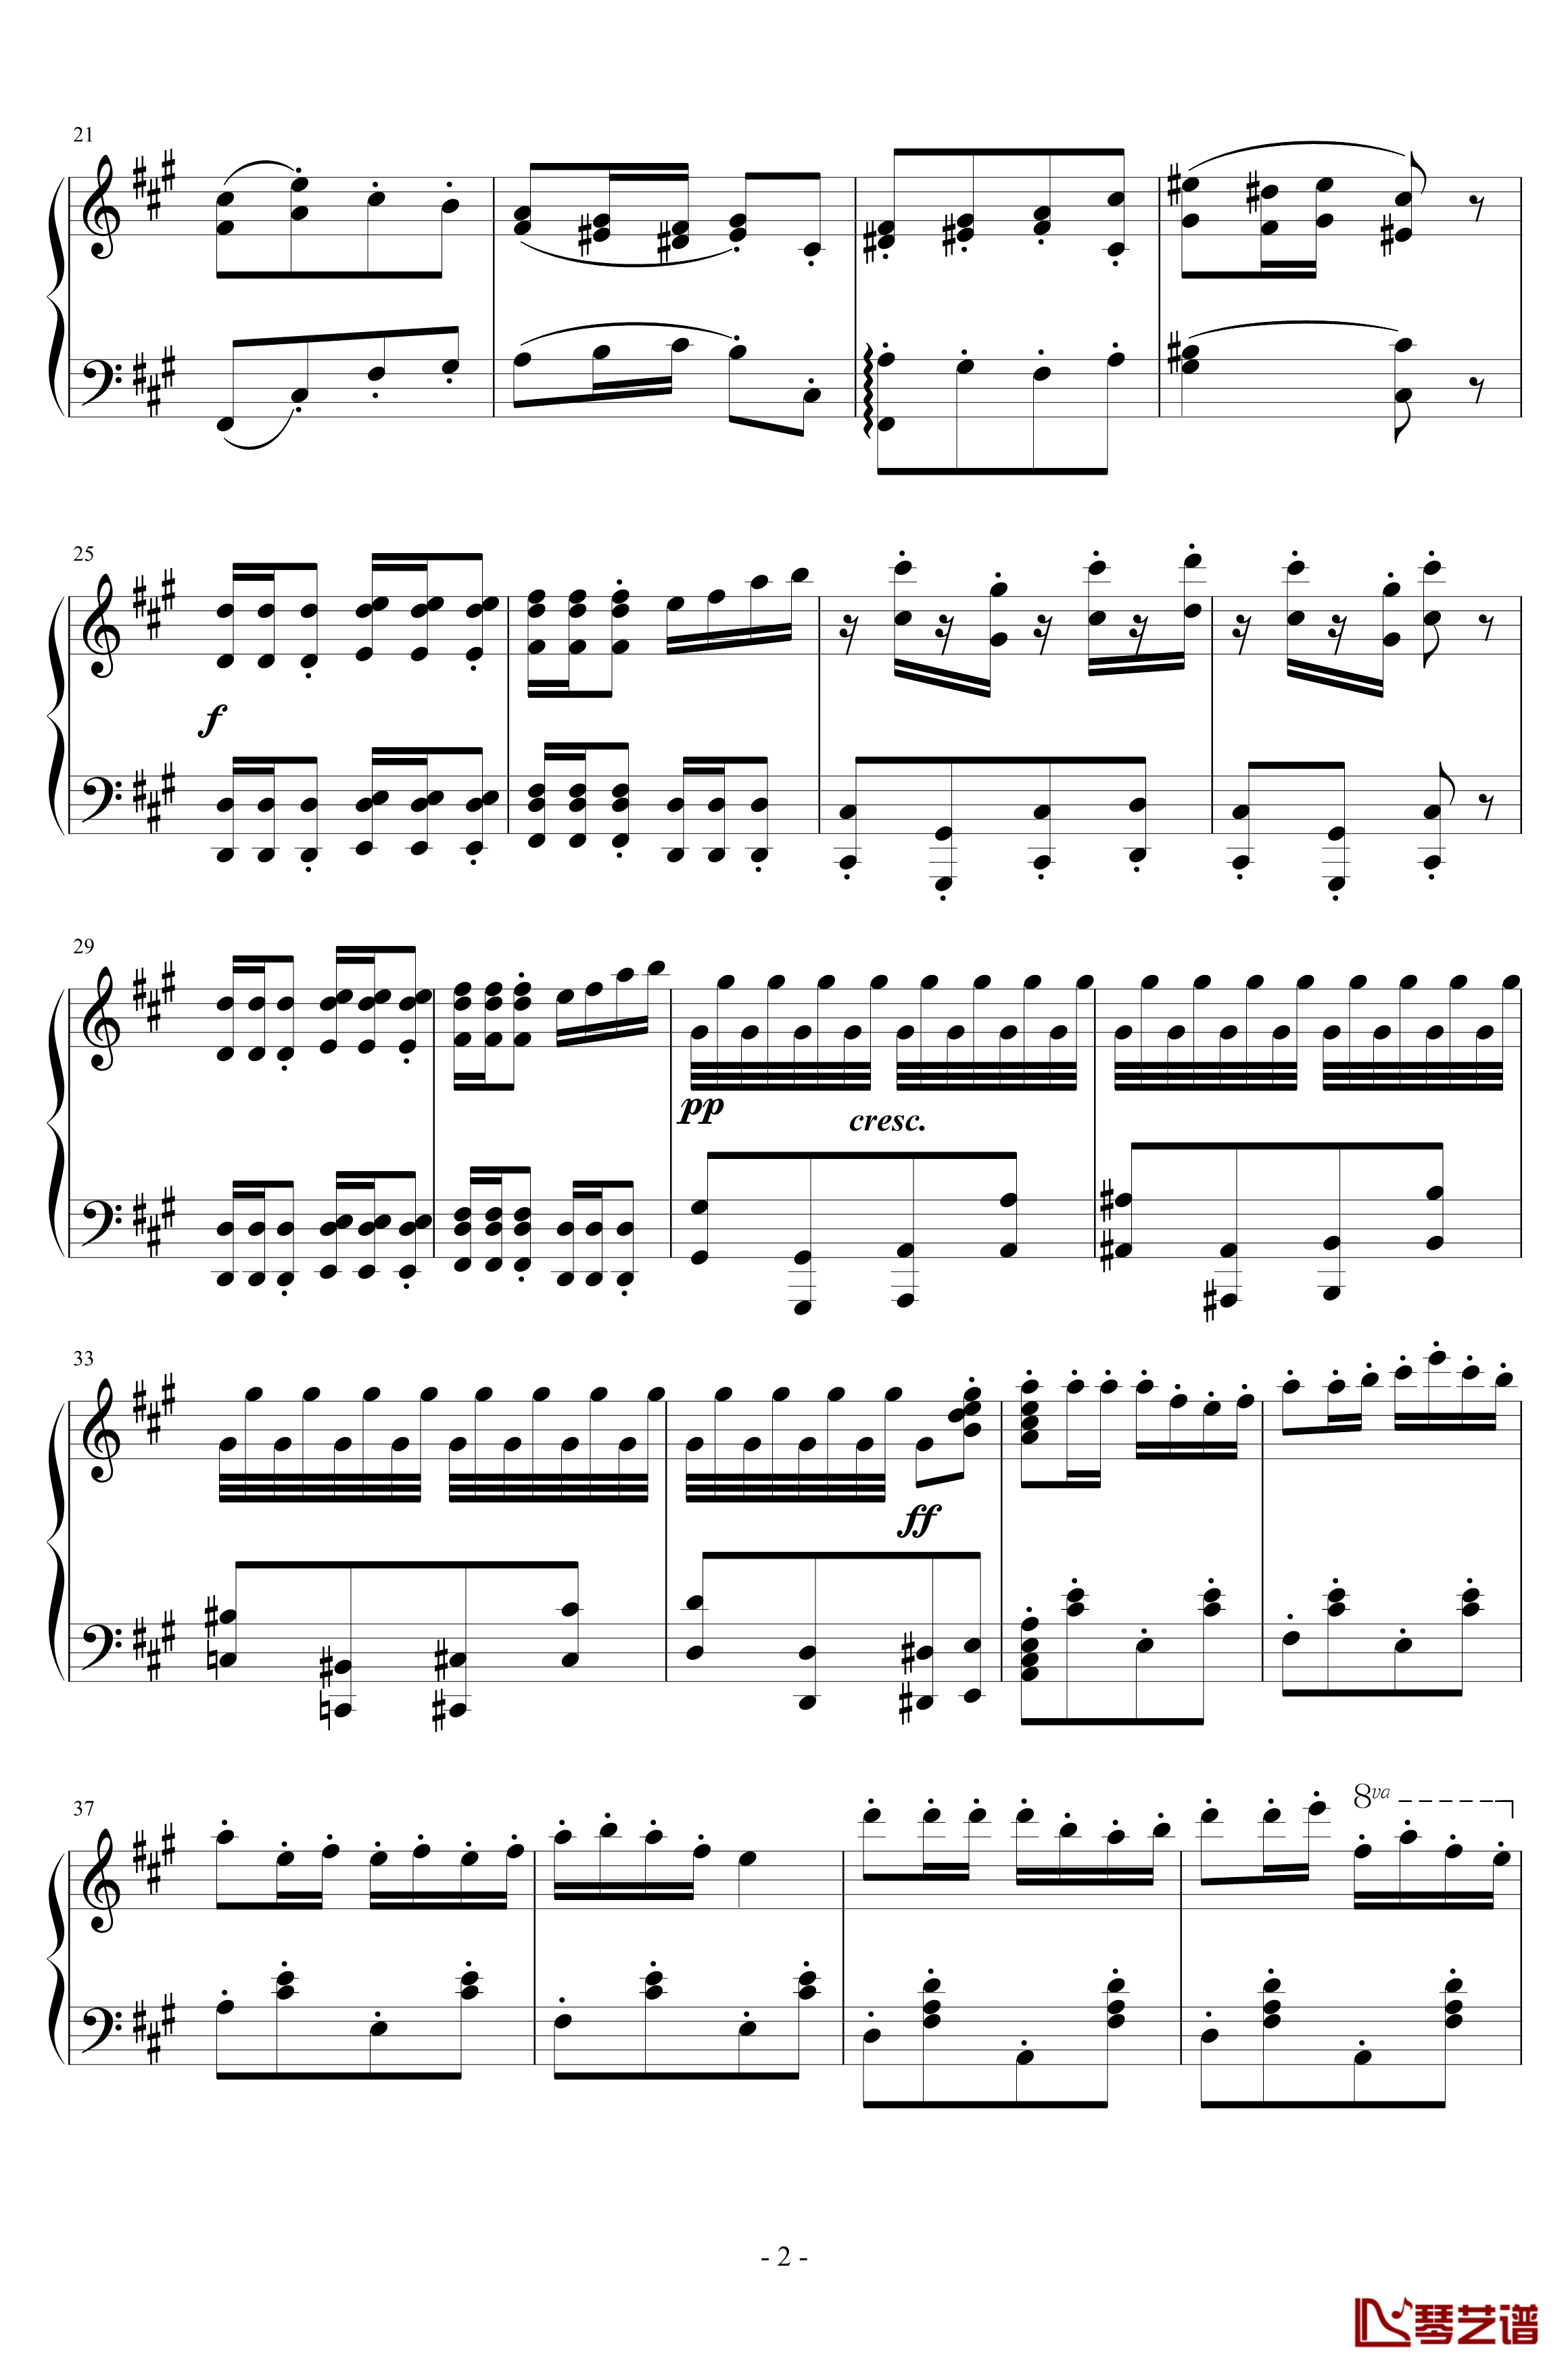 卡门序曲钢琴谱-朝鲜风格-比才-Bizet2